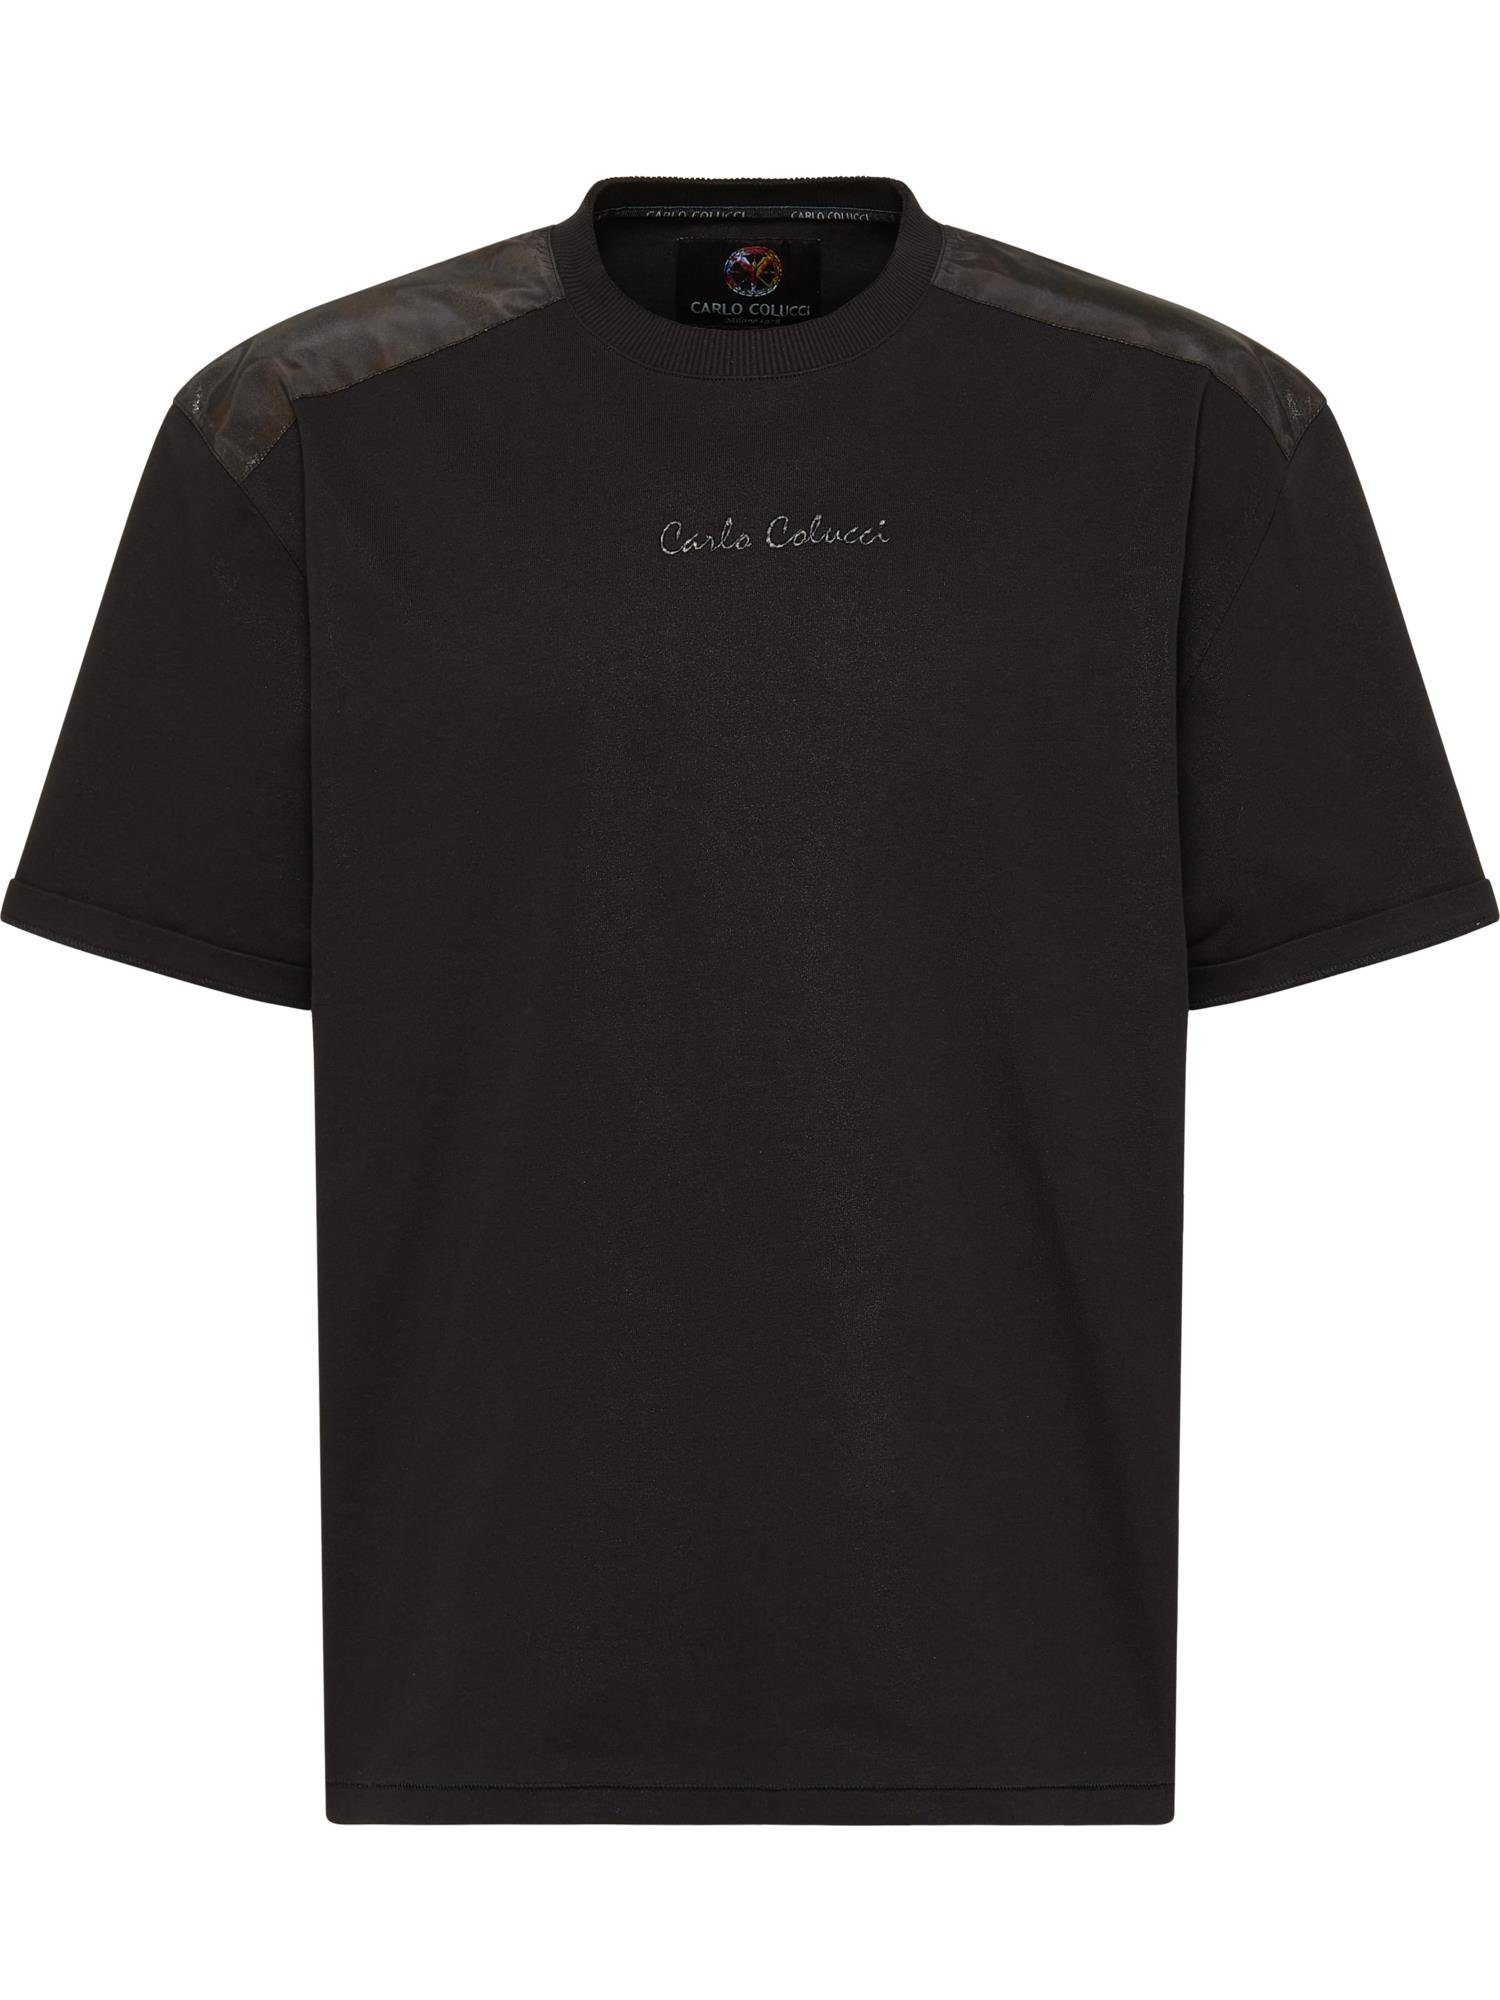 T-Shirt COLUCCI Schwarz Danelon CARLO